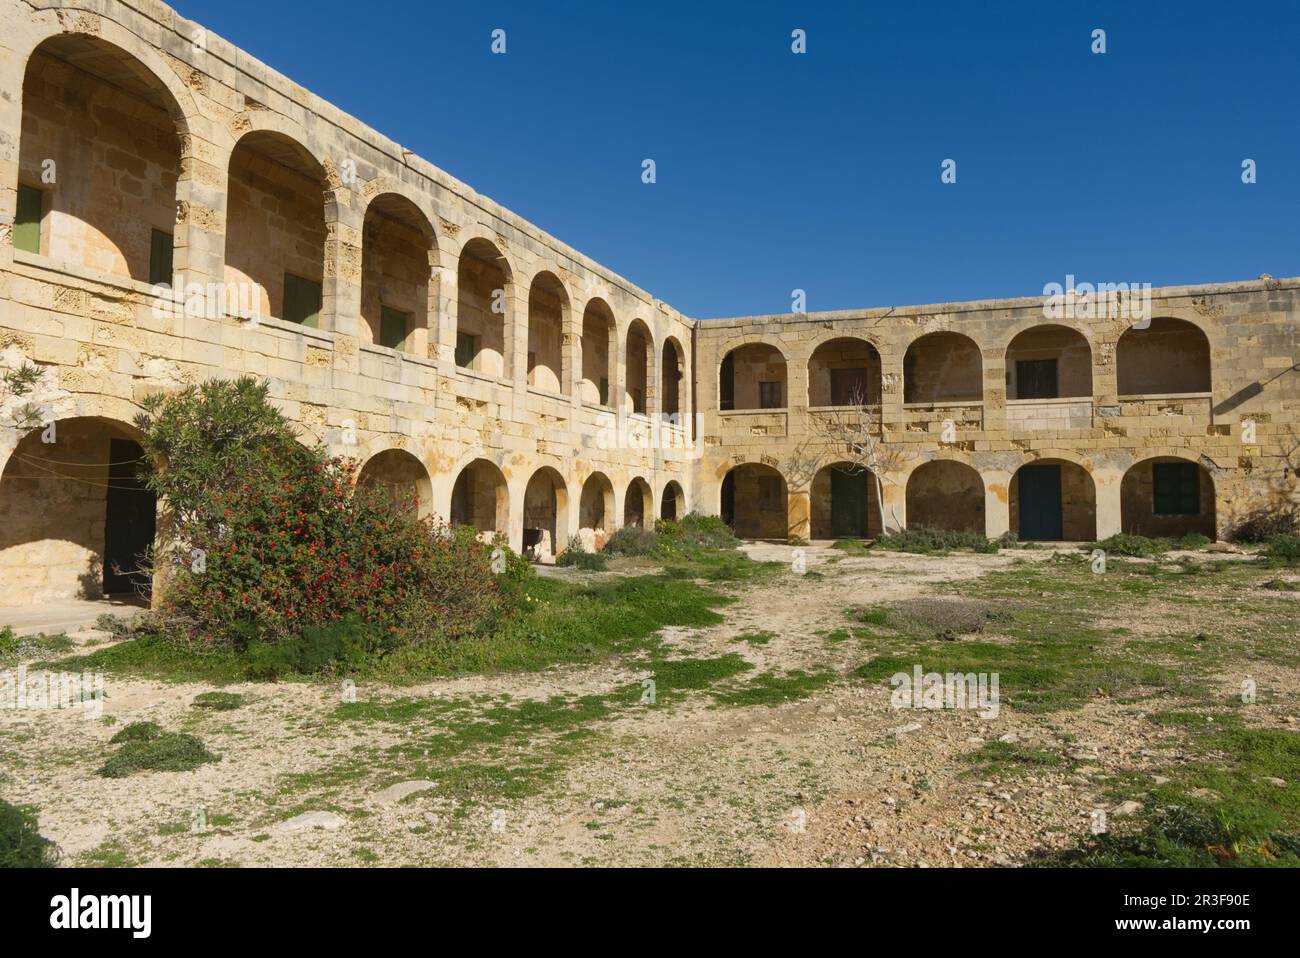 Ancienne station de quarantaine pour marins, Comino, Mer méditerranée, Etat insulaire, Malte Banque D'Images